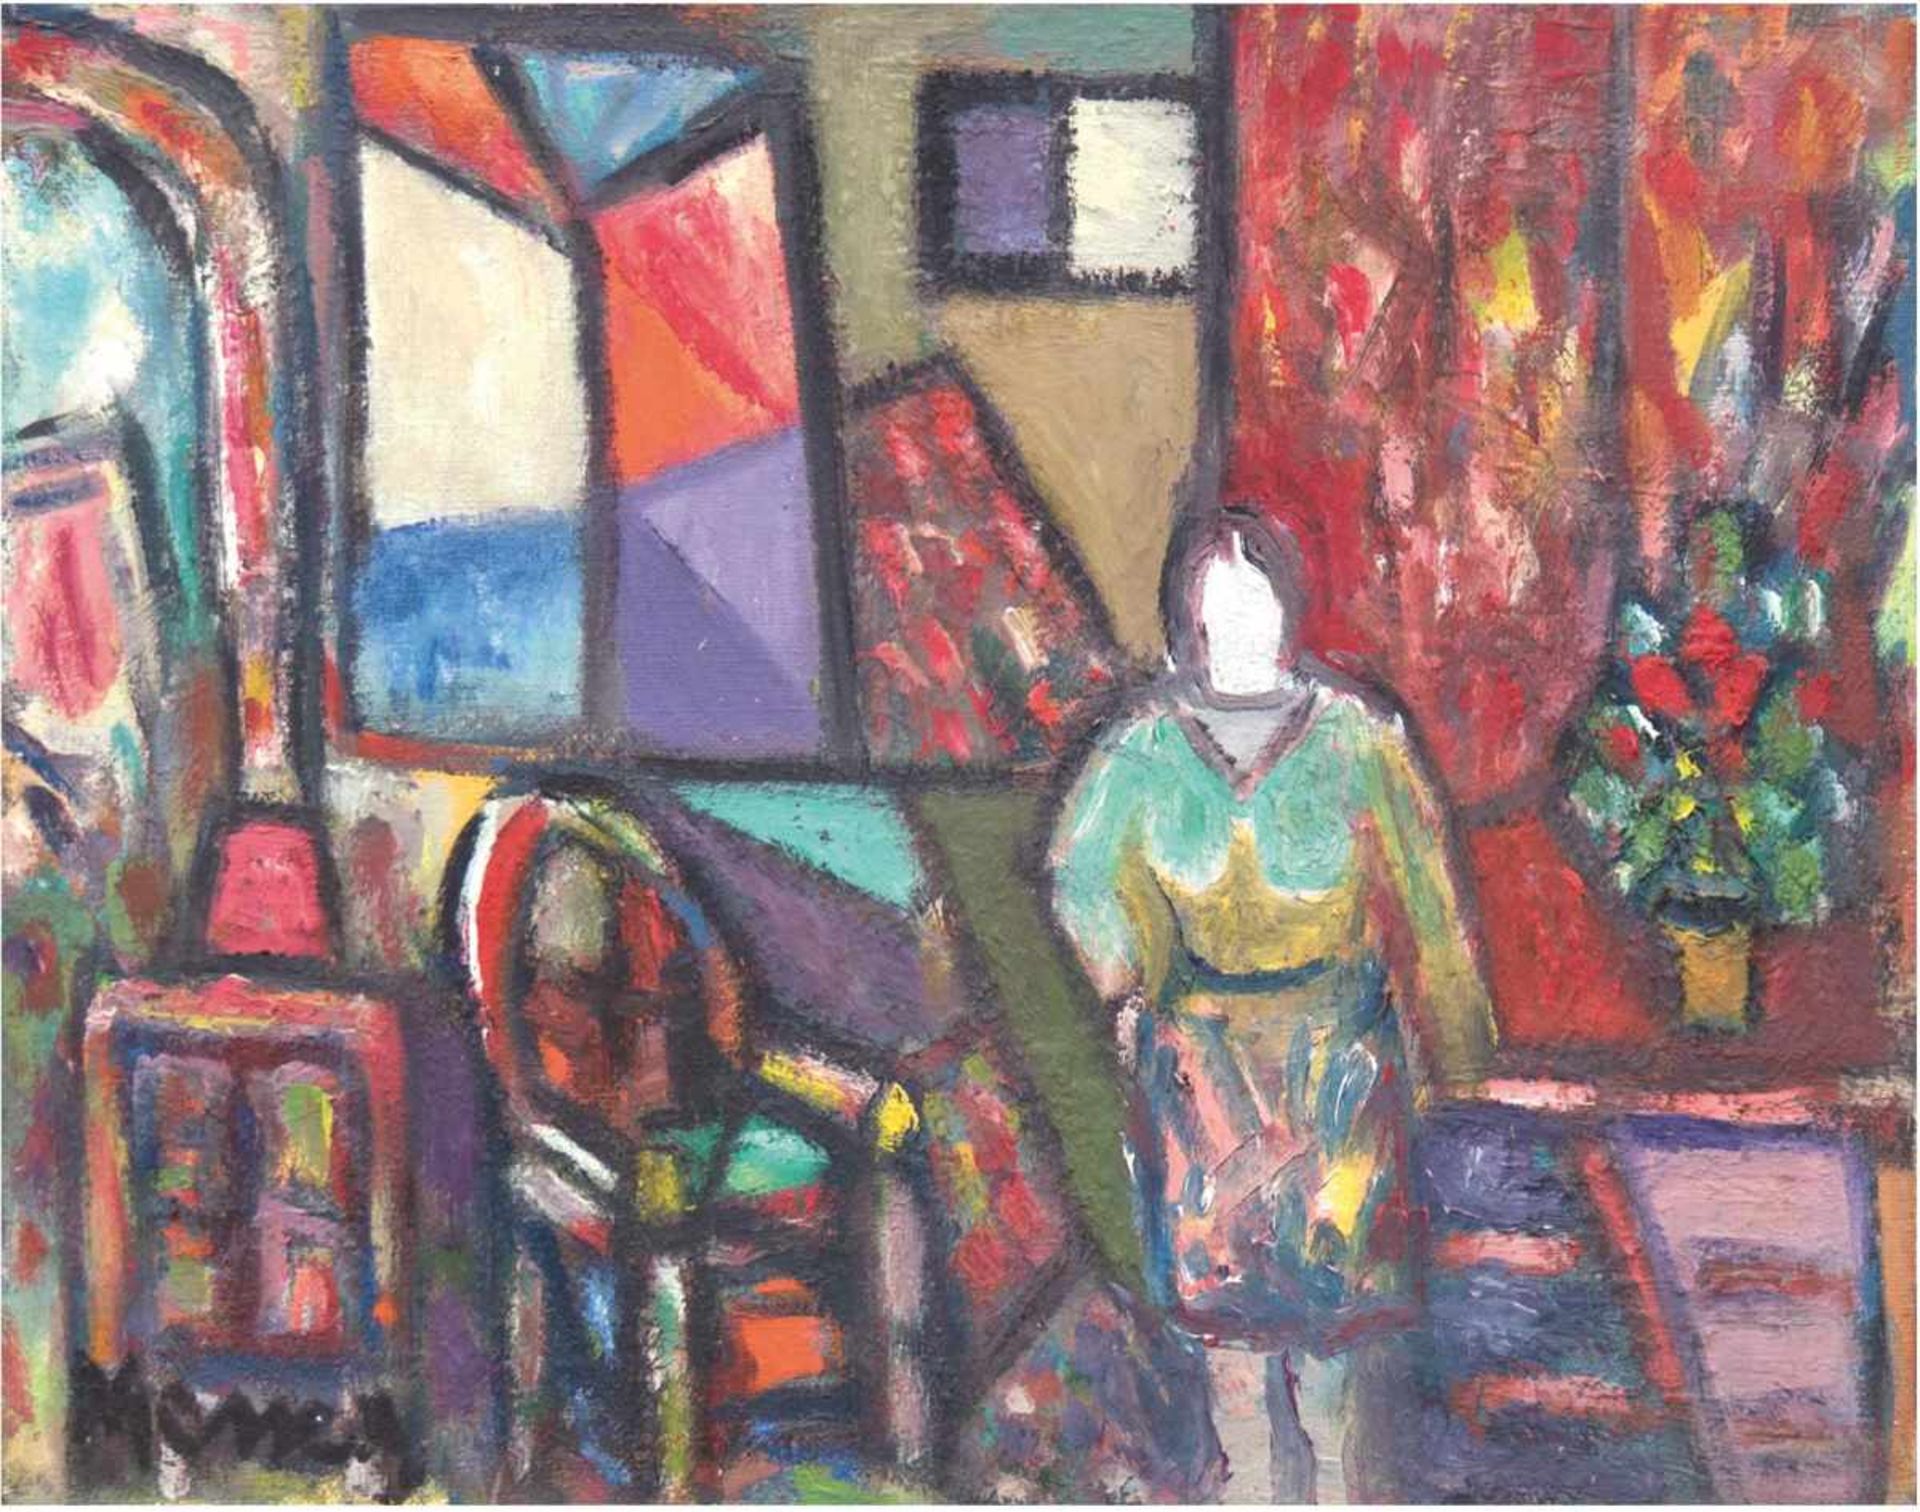 Messer, David (1912-1998) "Frau im Interieur", Öl/Lw., signiert u.l., rückseitig nochmalssign. und